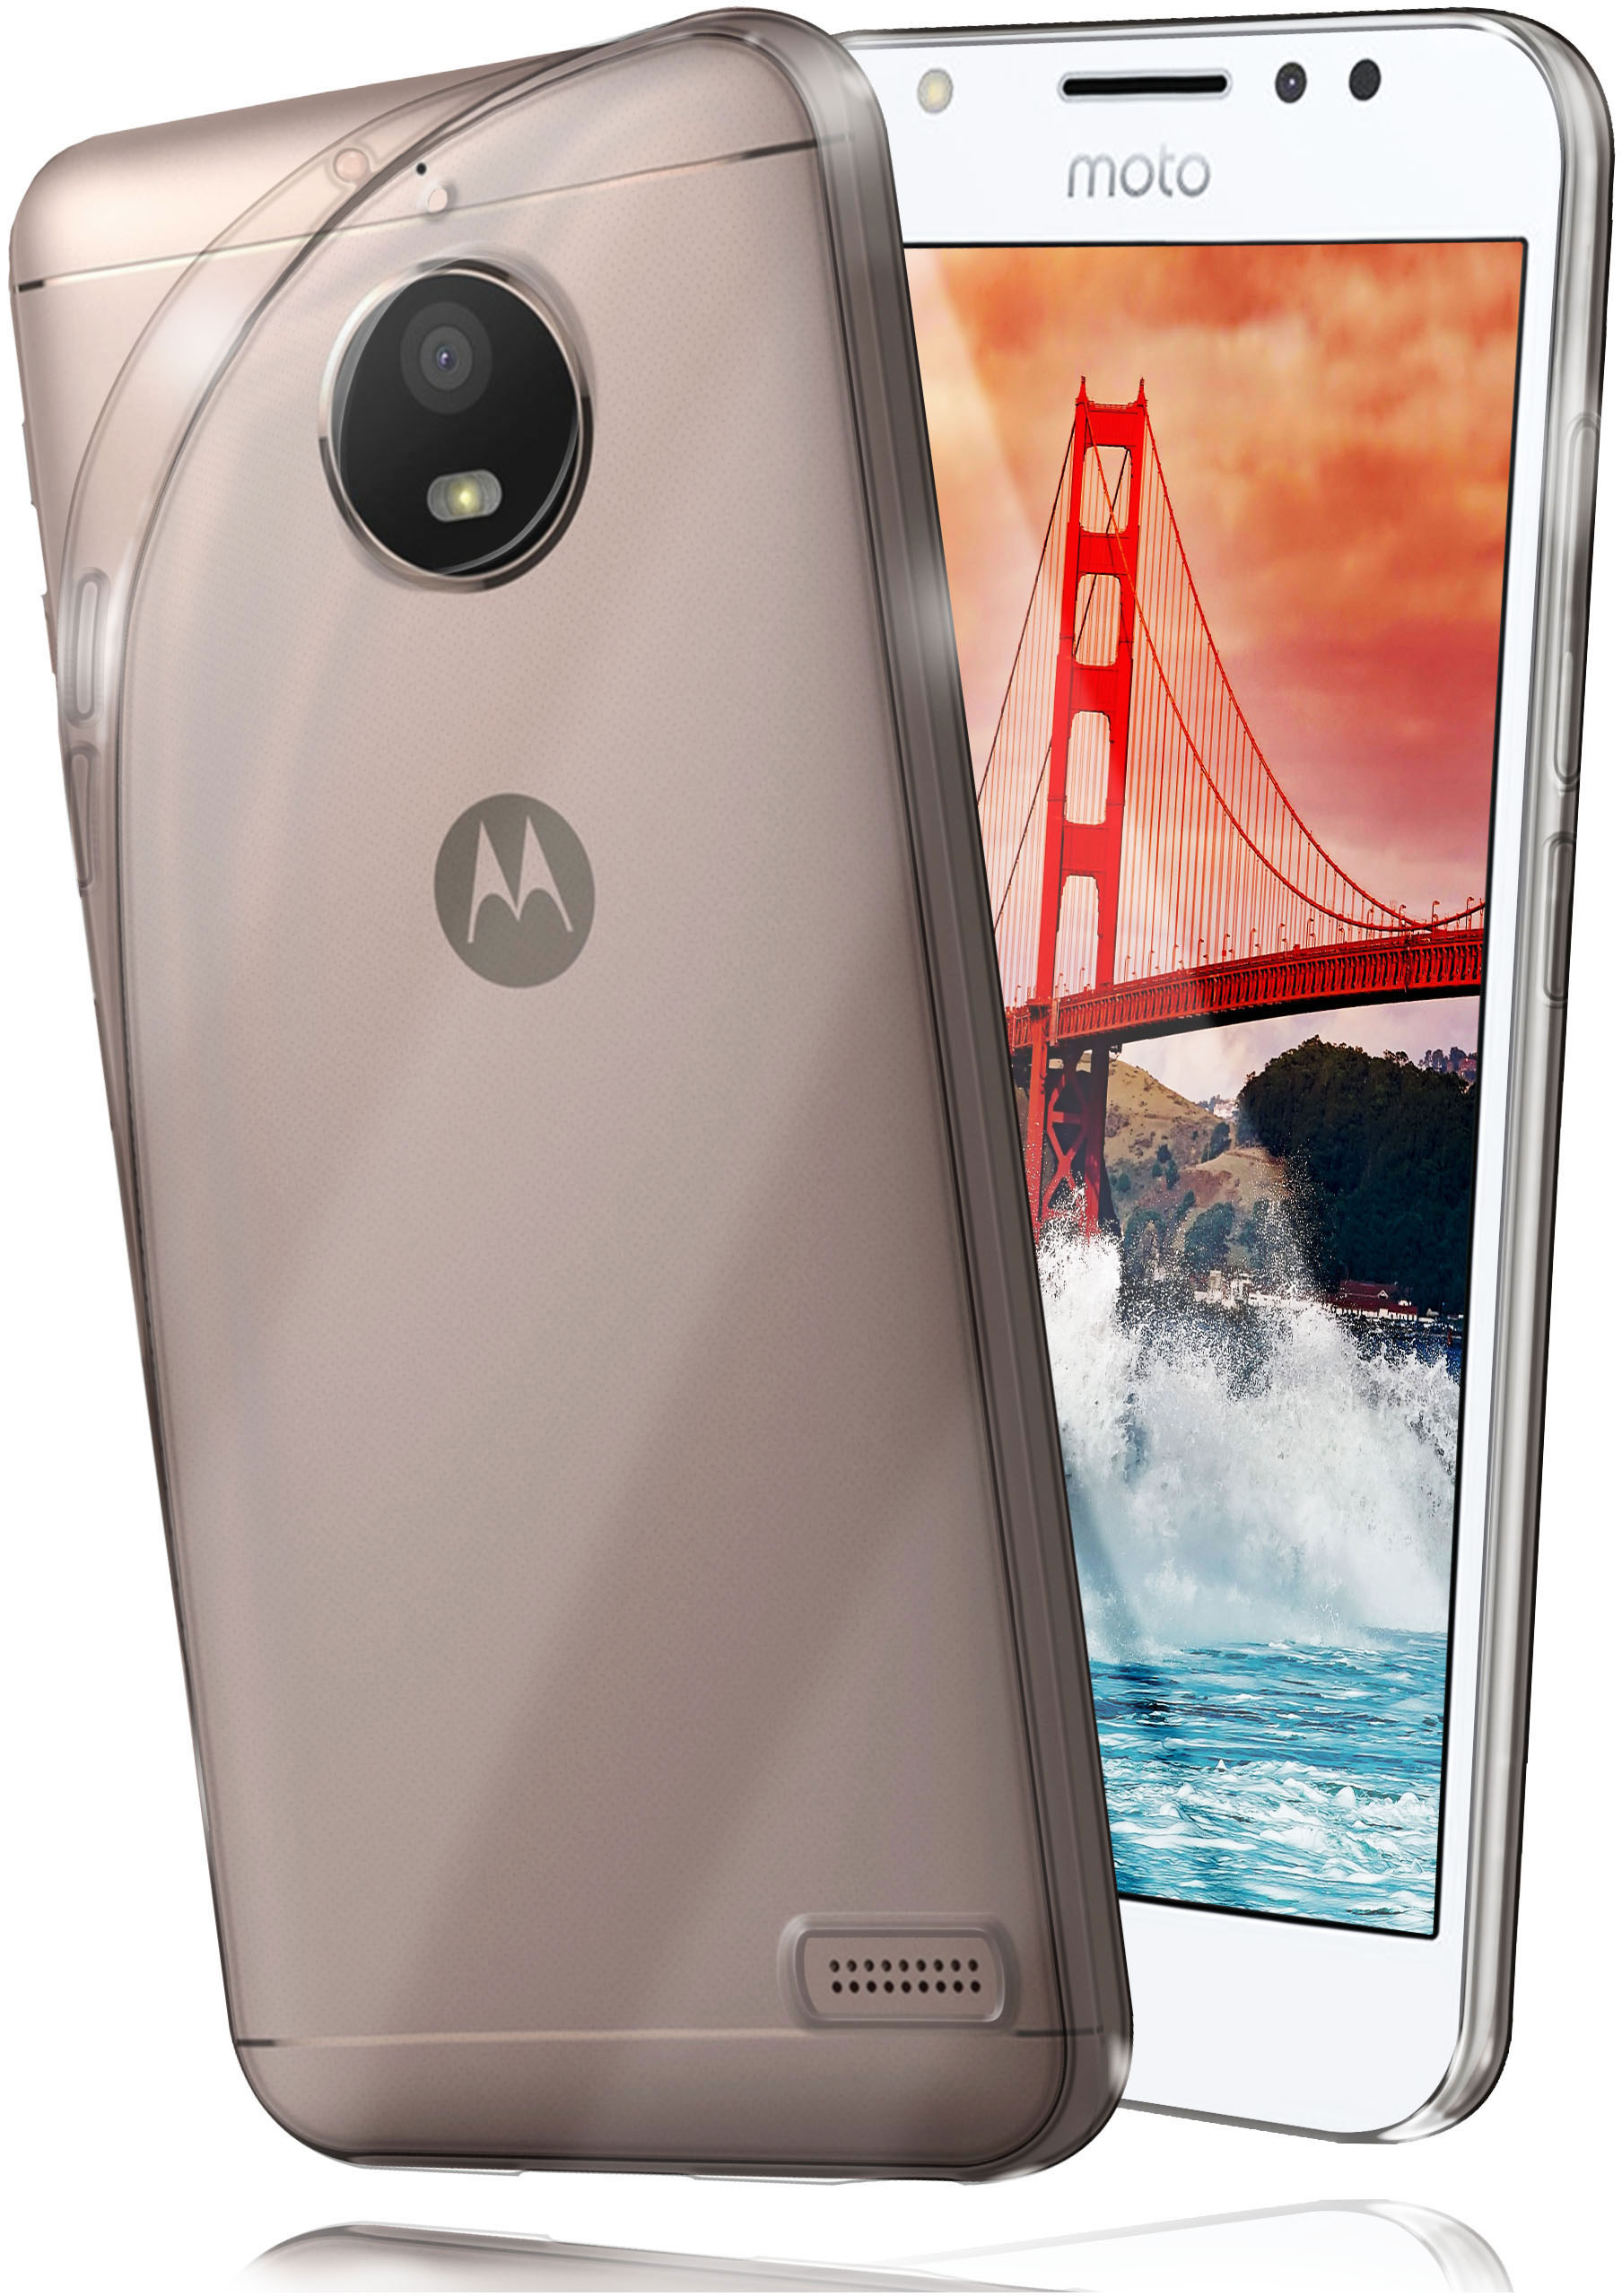 MOEX Aero Case, E4, Backcover, Moto Motorola, Crystal-Clear